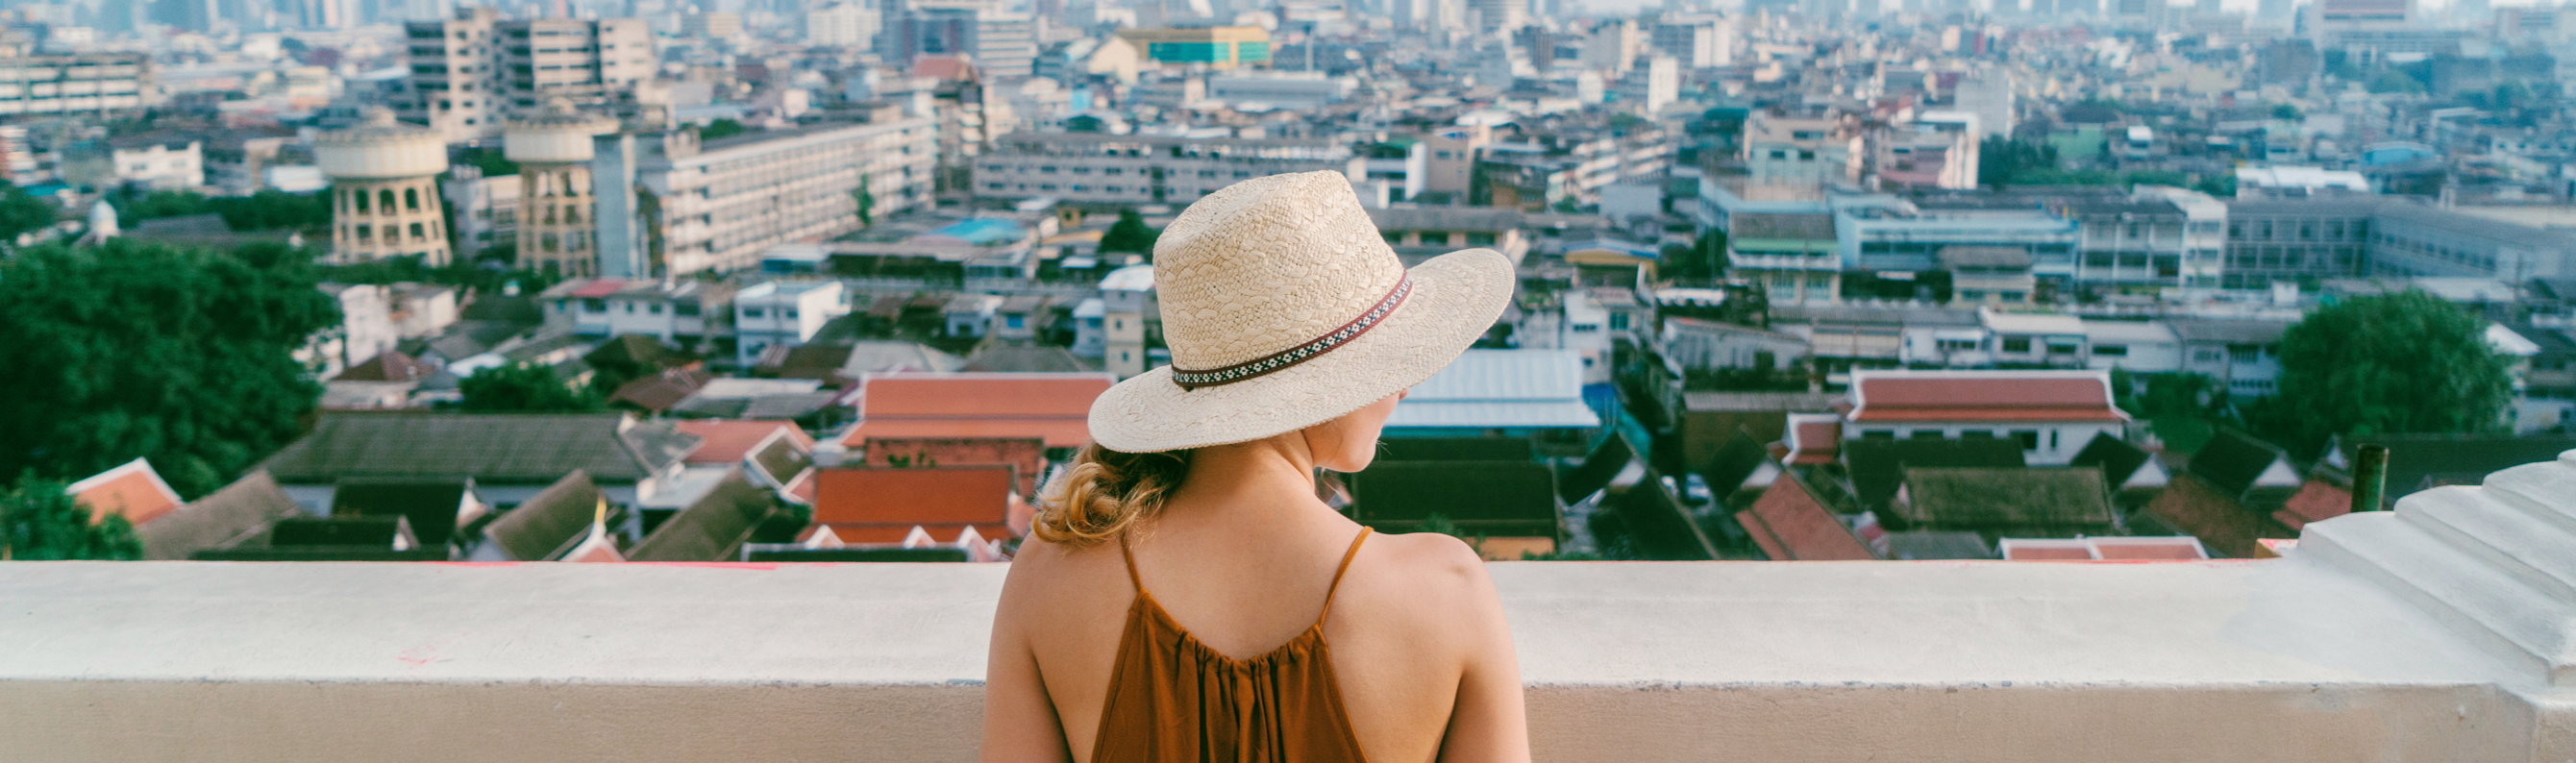 Jeune femme avec un chapeau admirant une grande ville